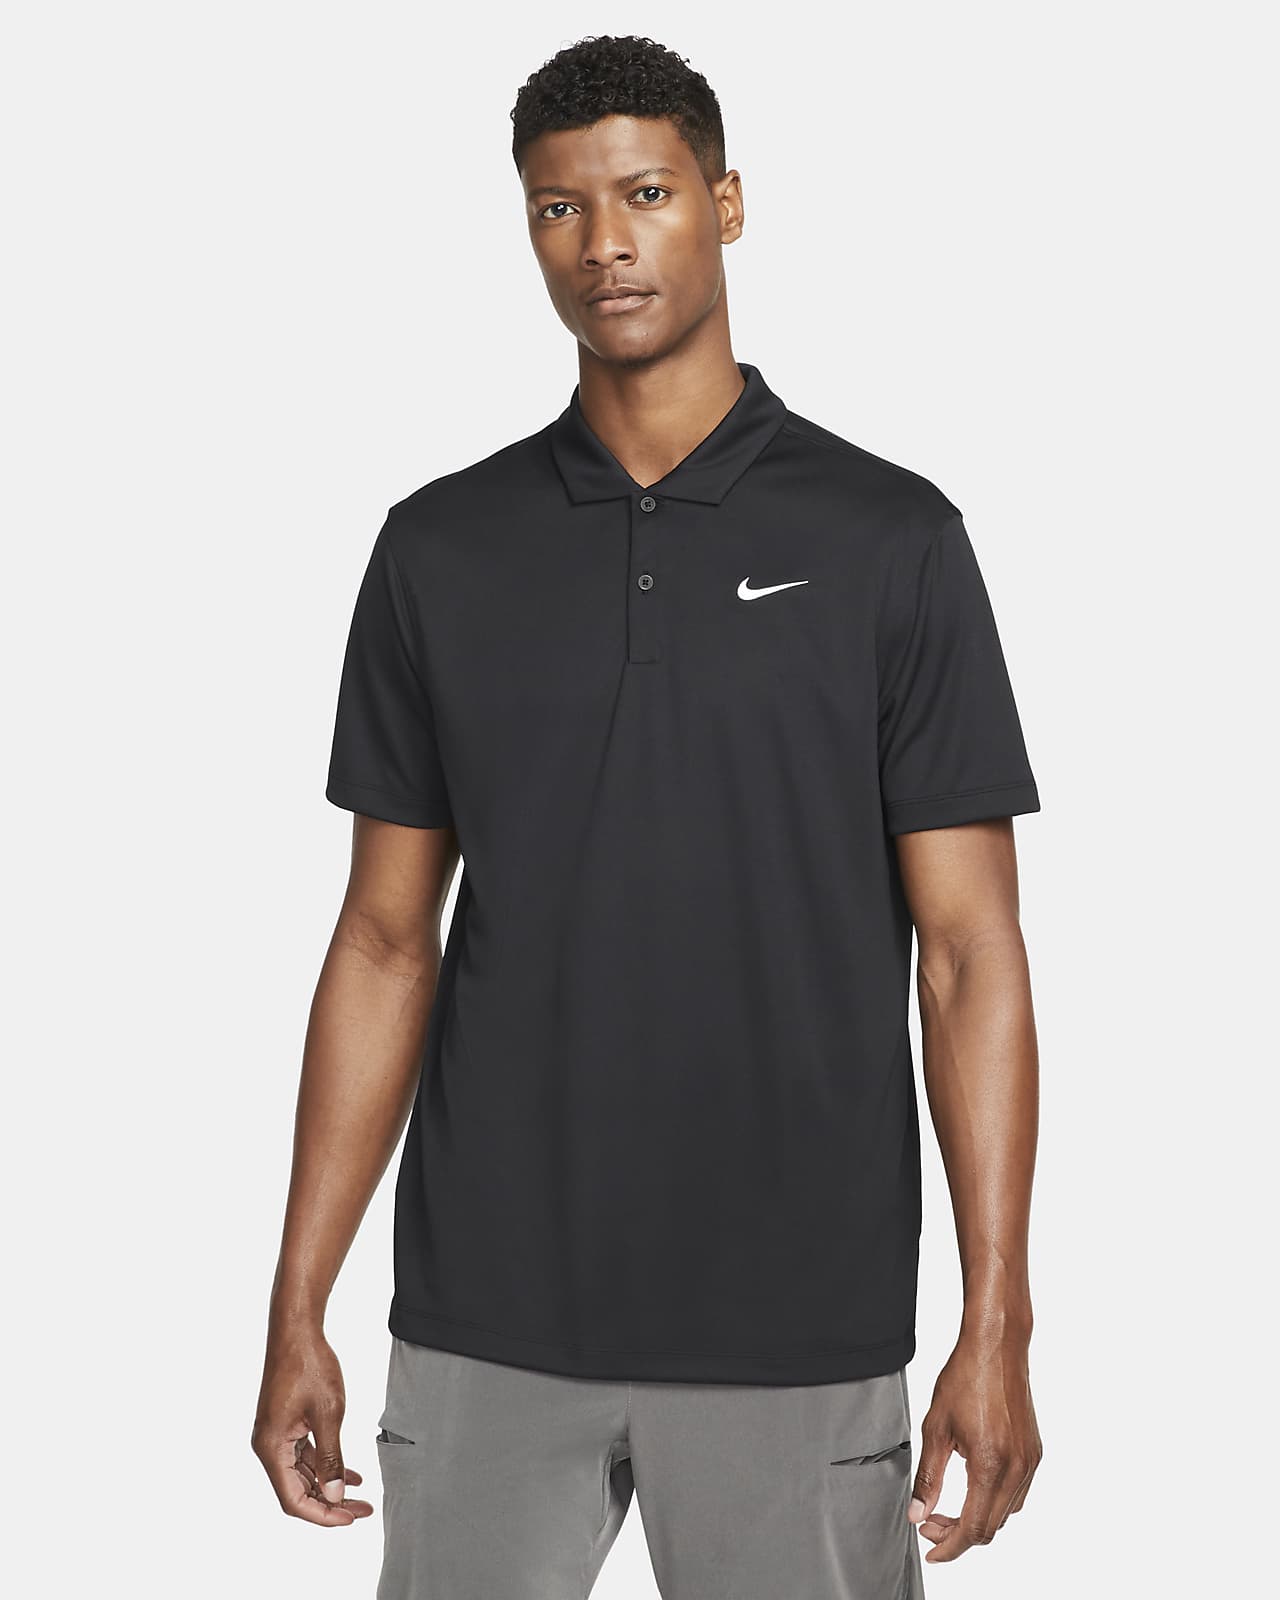 Ανδρική μπλούζα πόλο για τένις NikeCourt Dri-FIT